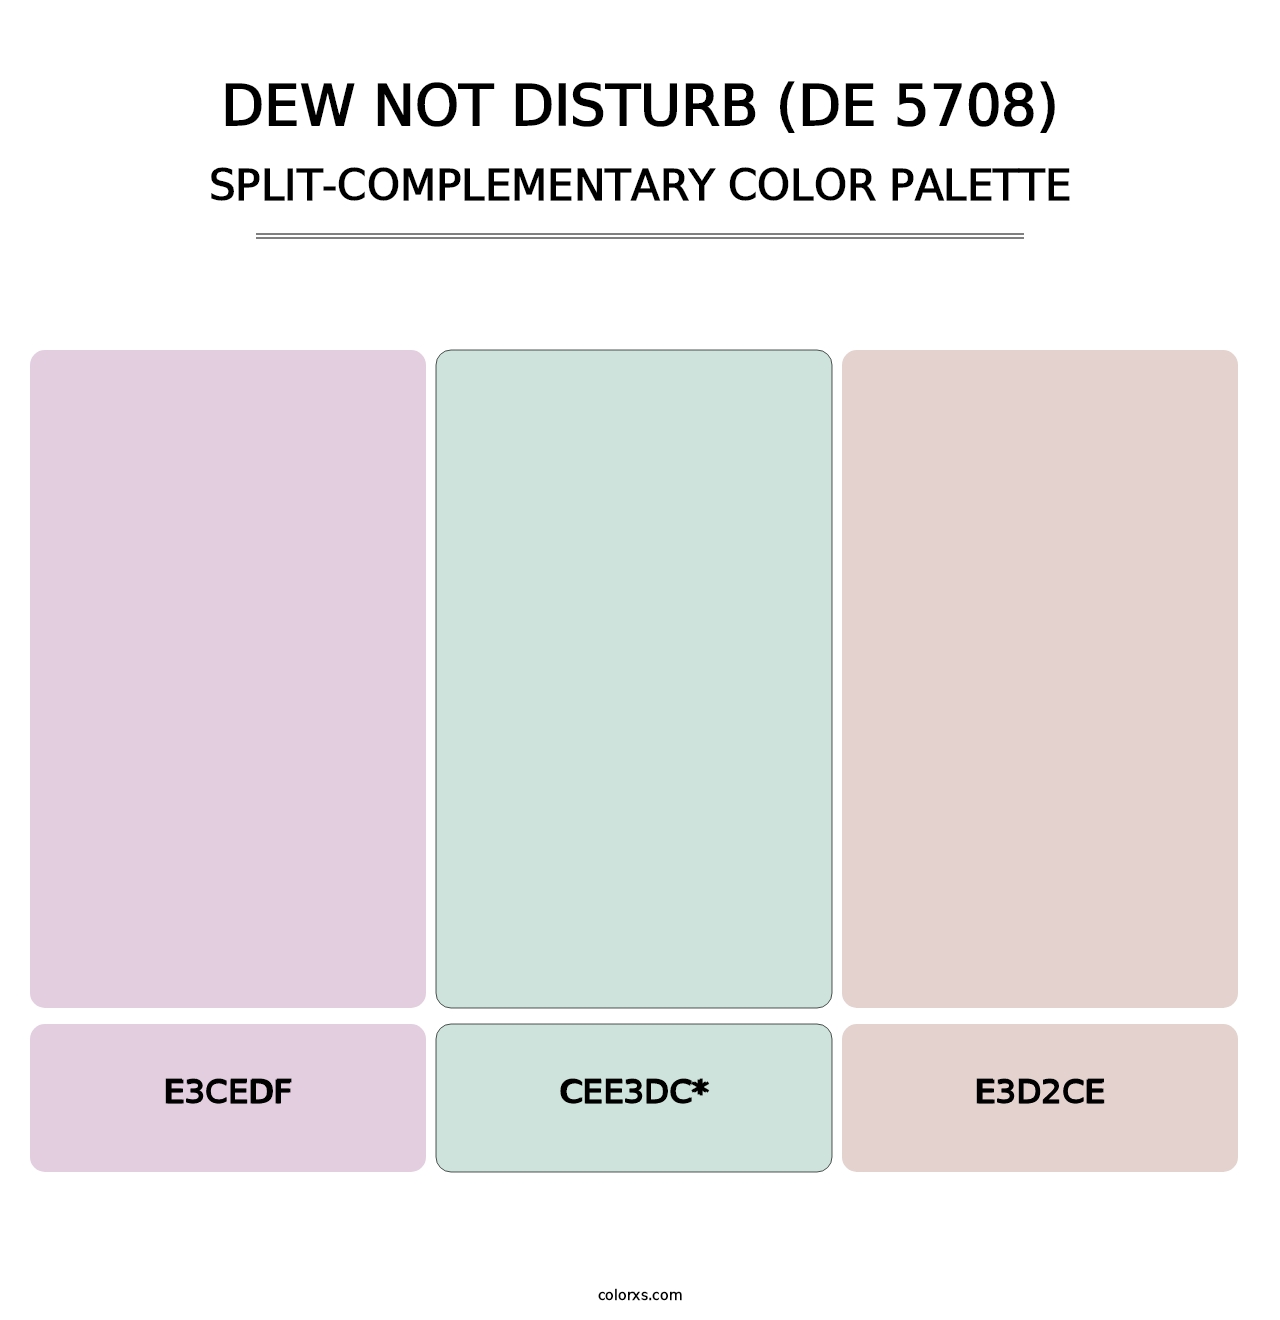 Dew Not Disturb (DE 5708) - Split-Complementary Color Palette